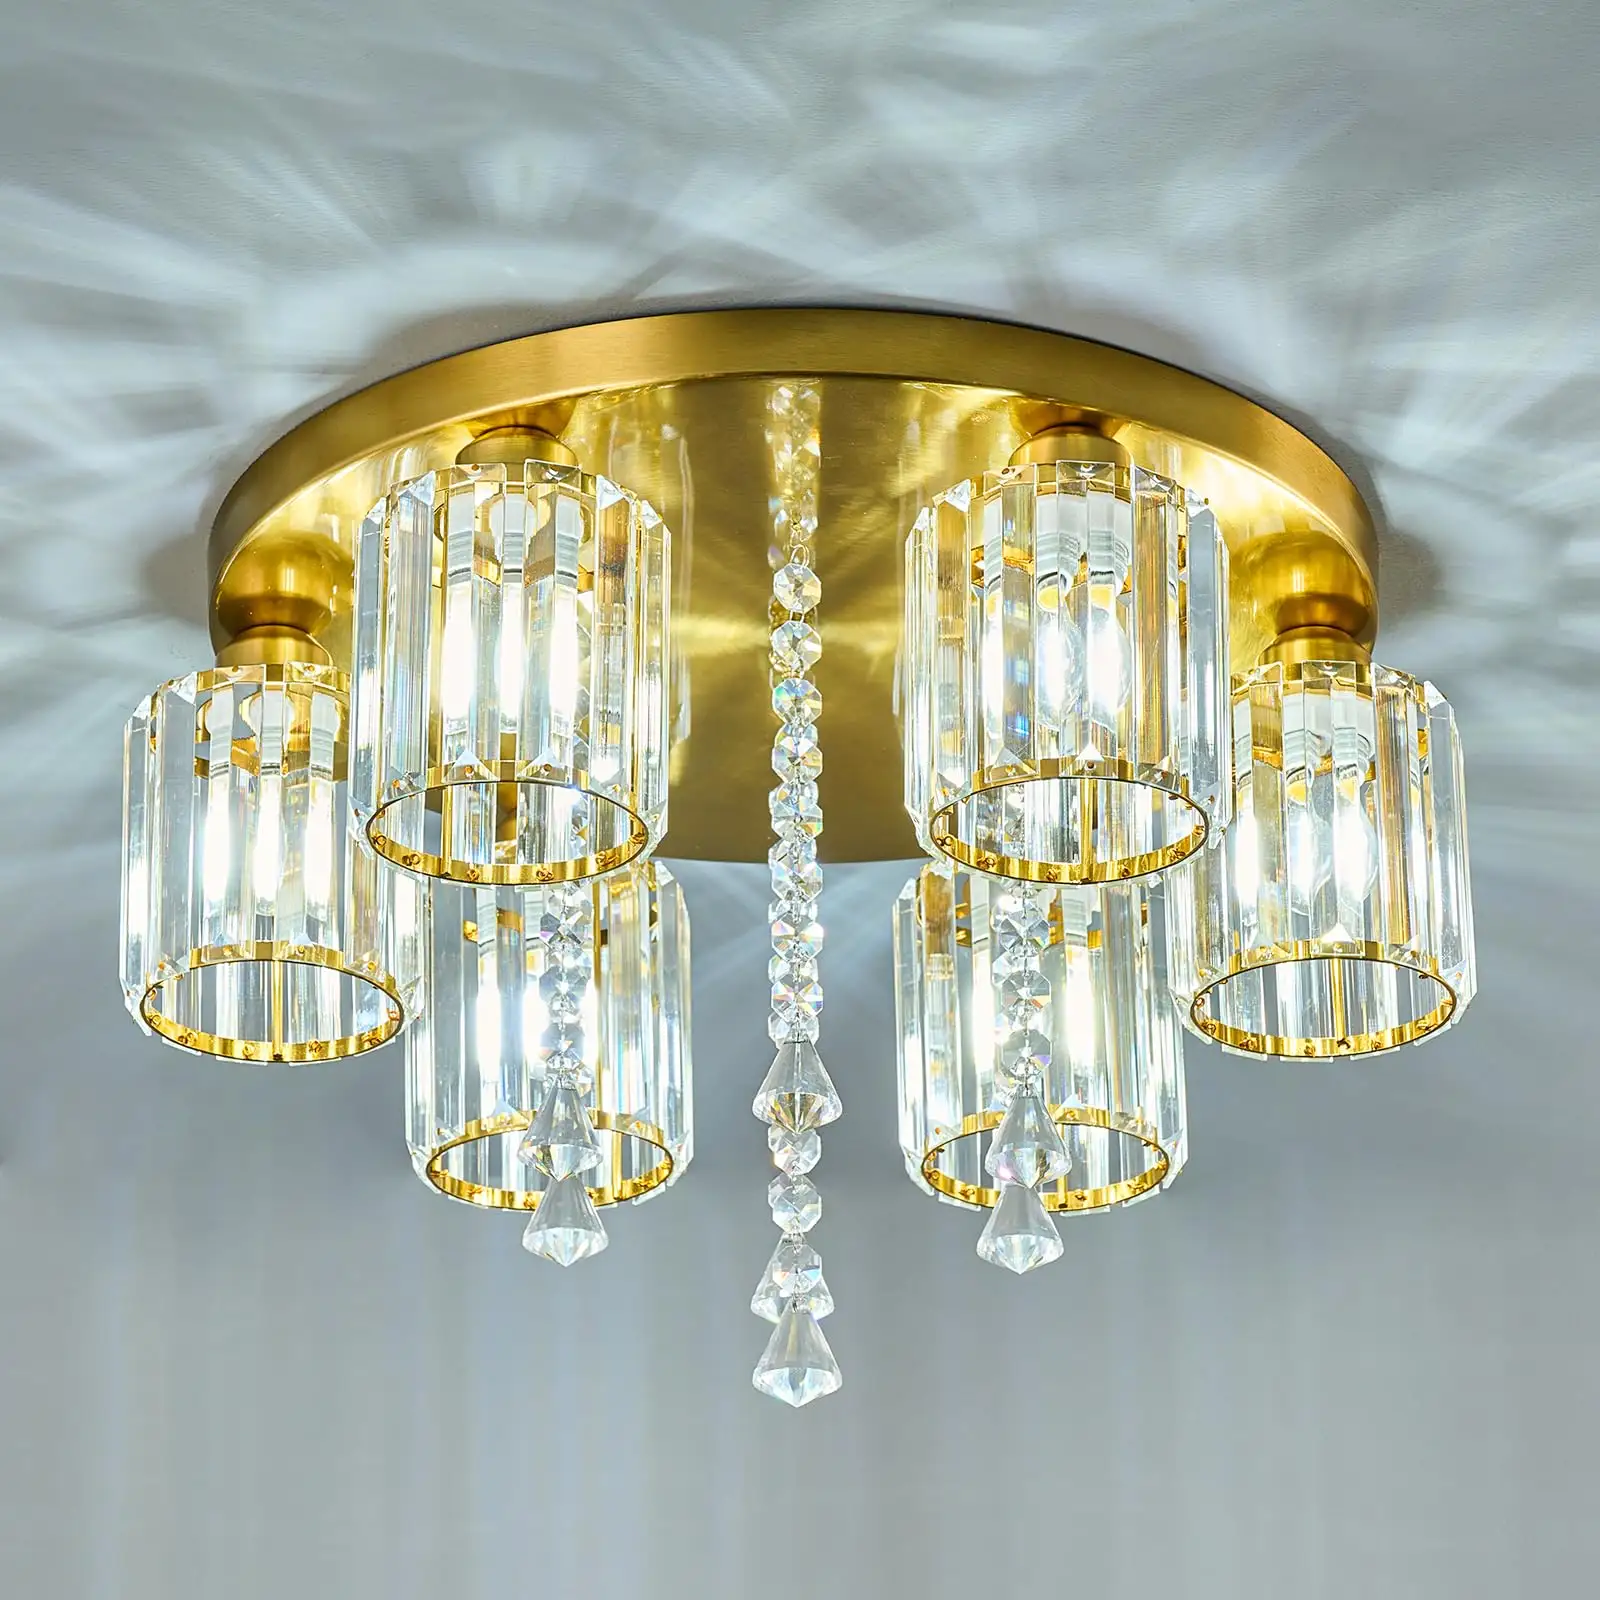 Nuova tendenza moderna lampadario a Led luce cristallo oro lampada moderna per soggiorno sala da pranzo a montaggio a soffitto luce